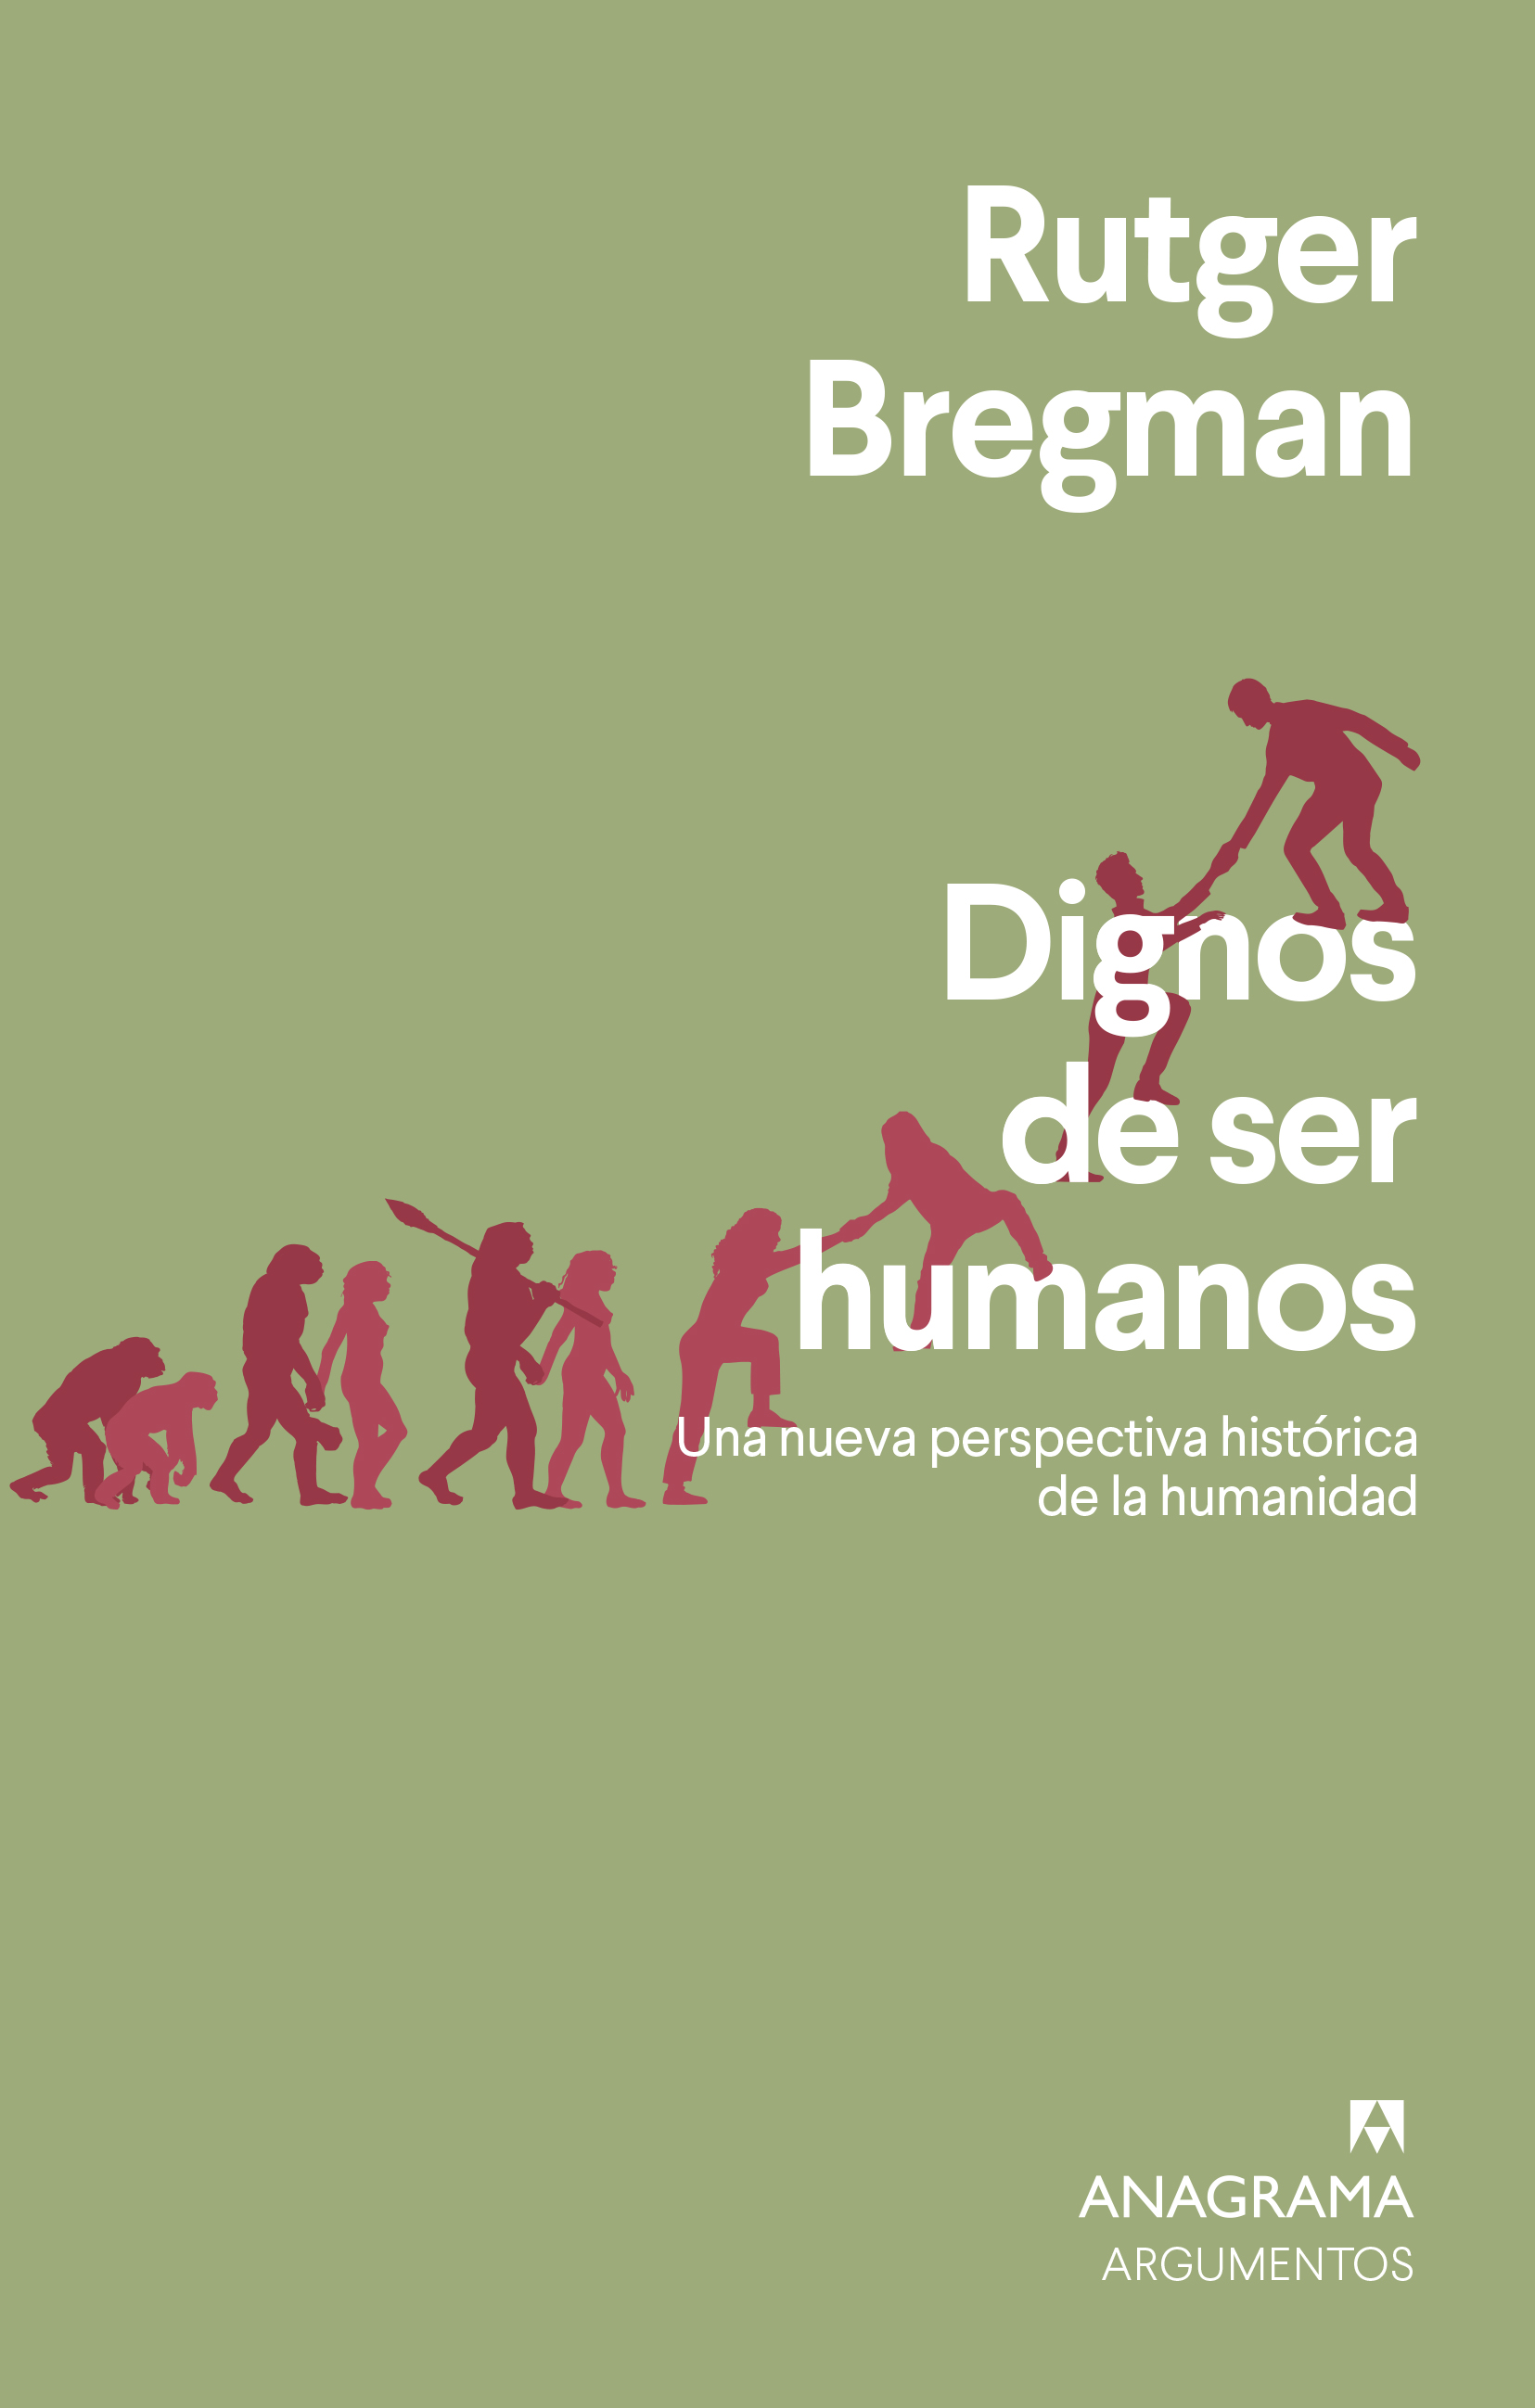 Eslovenia crucero Alcanzar Dignos de ser humanos - Bregman, Rutger - 978-84-339-6473-1 - Editorial  Anagrama